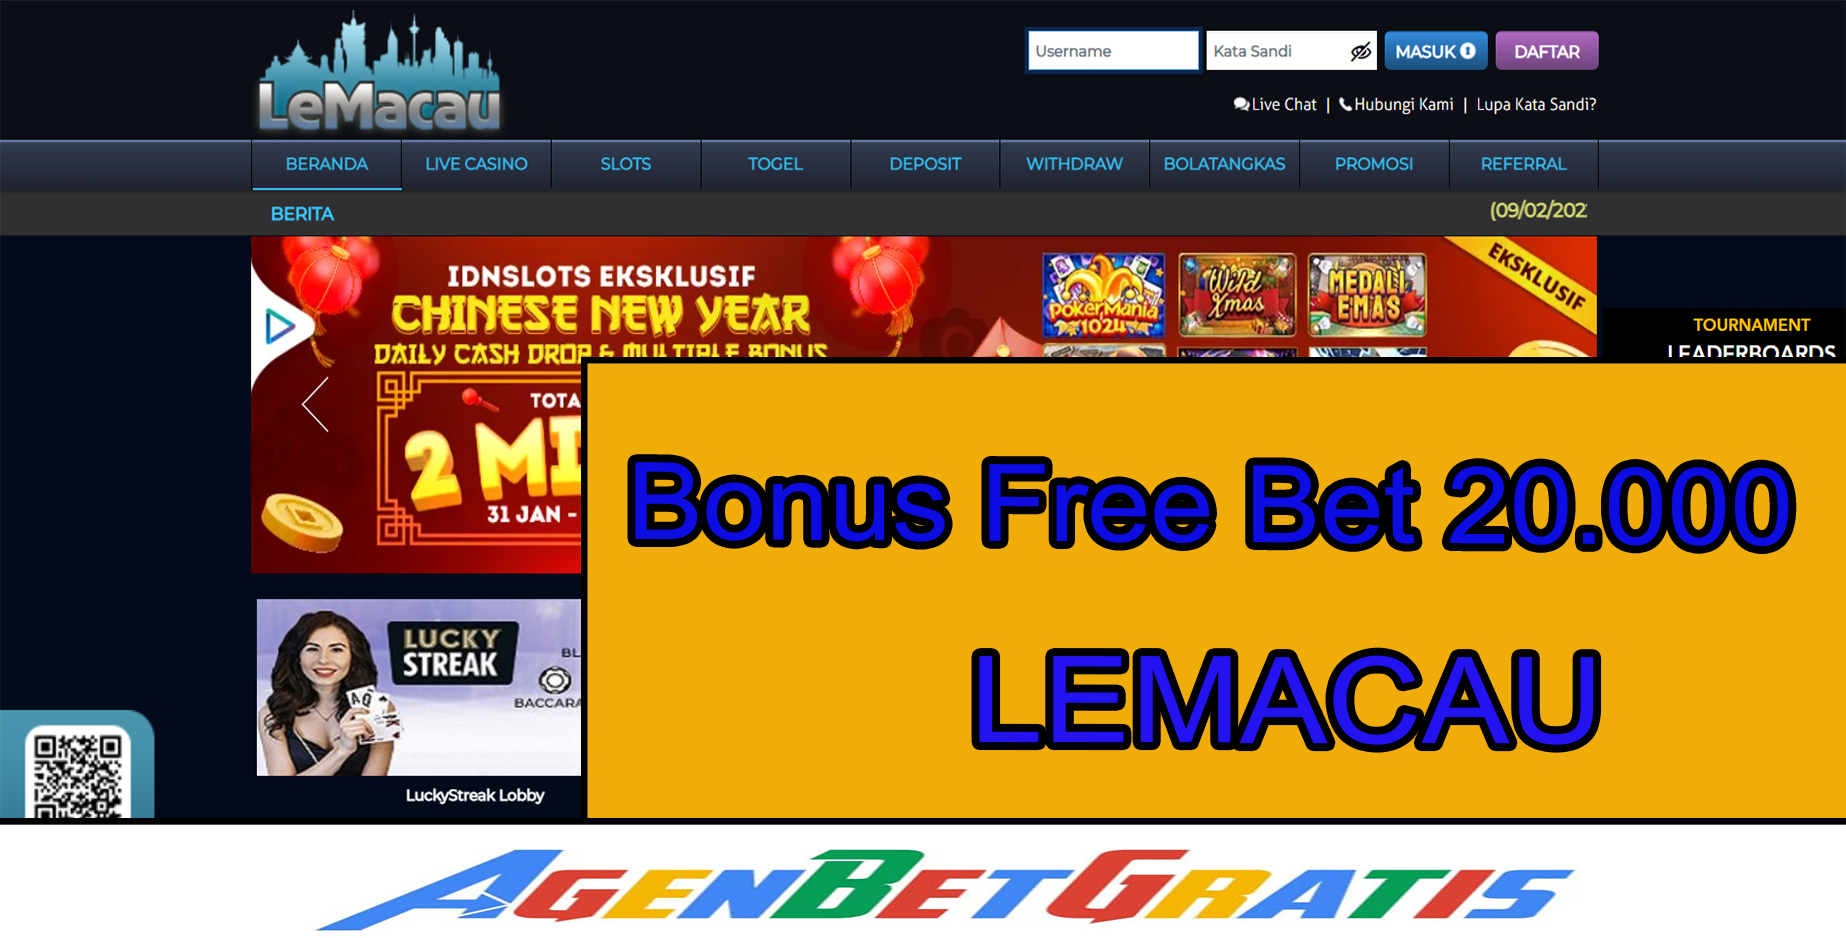 LEMACAU - Bonus FreeBet 20.000